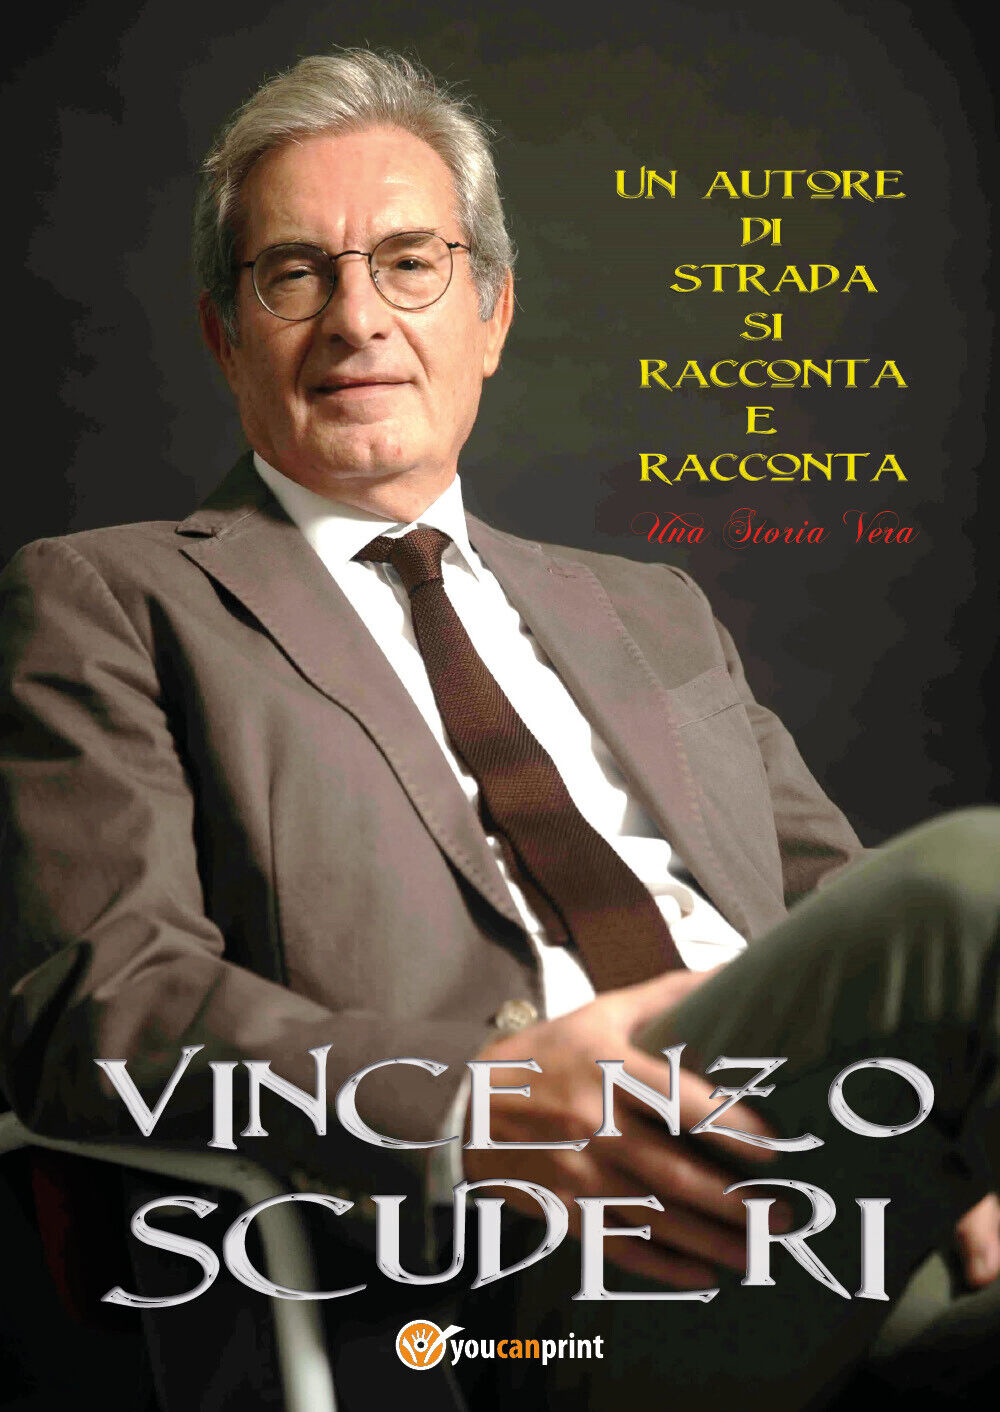 Un autore di strada si racconta e racconta una storia vera di Vincenzo Scuderi,  libro usato